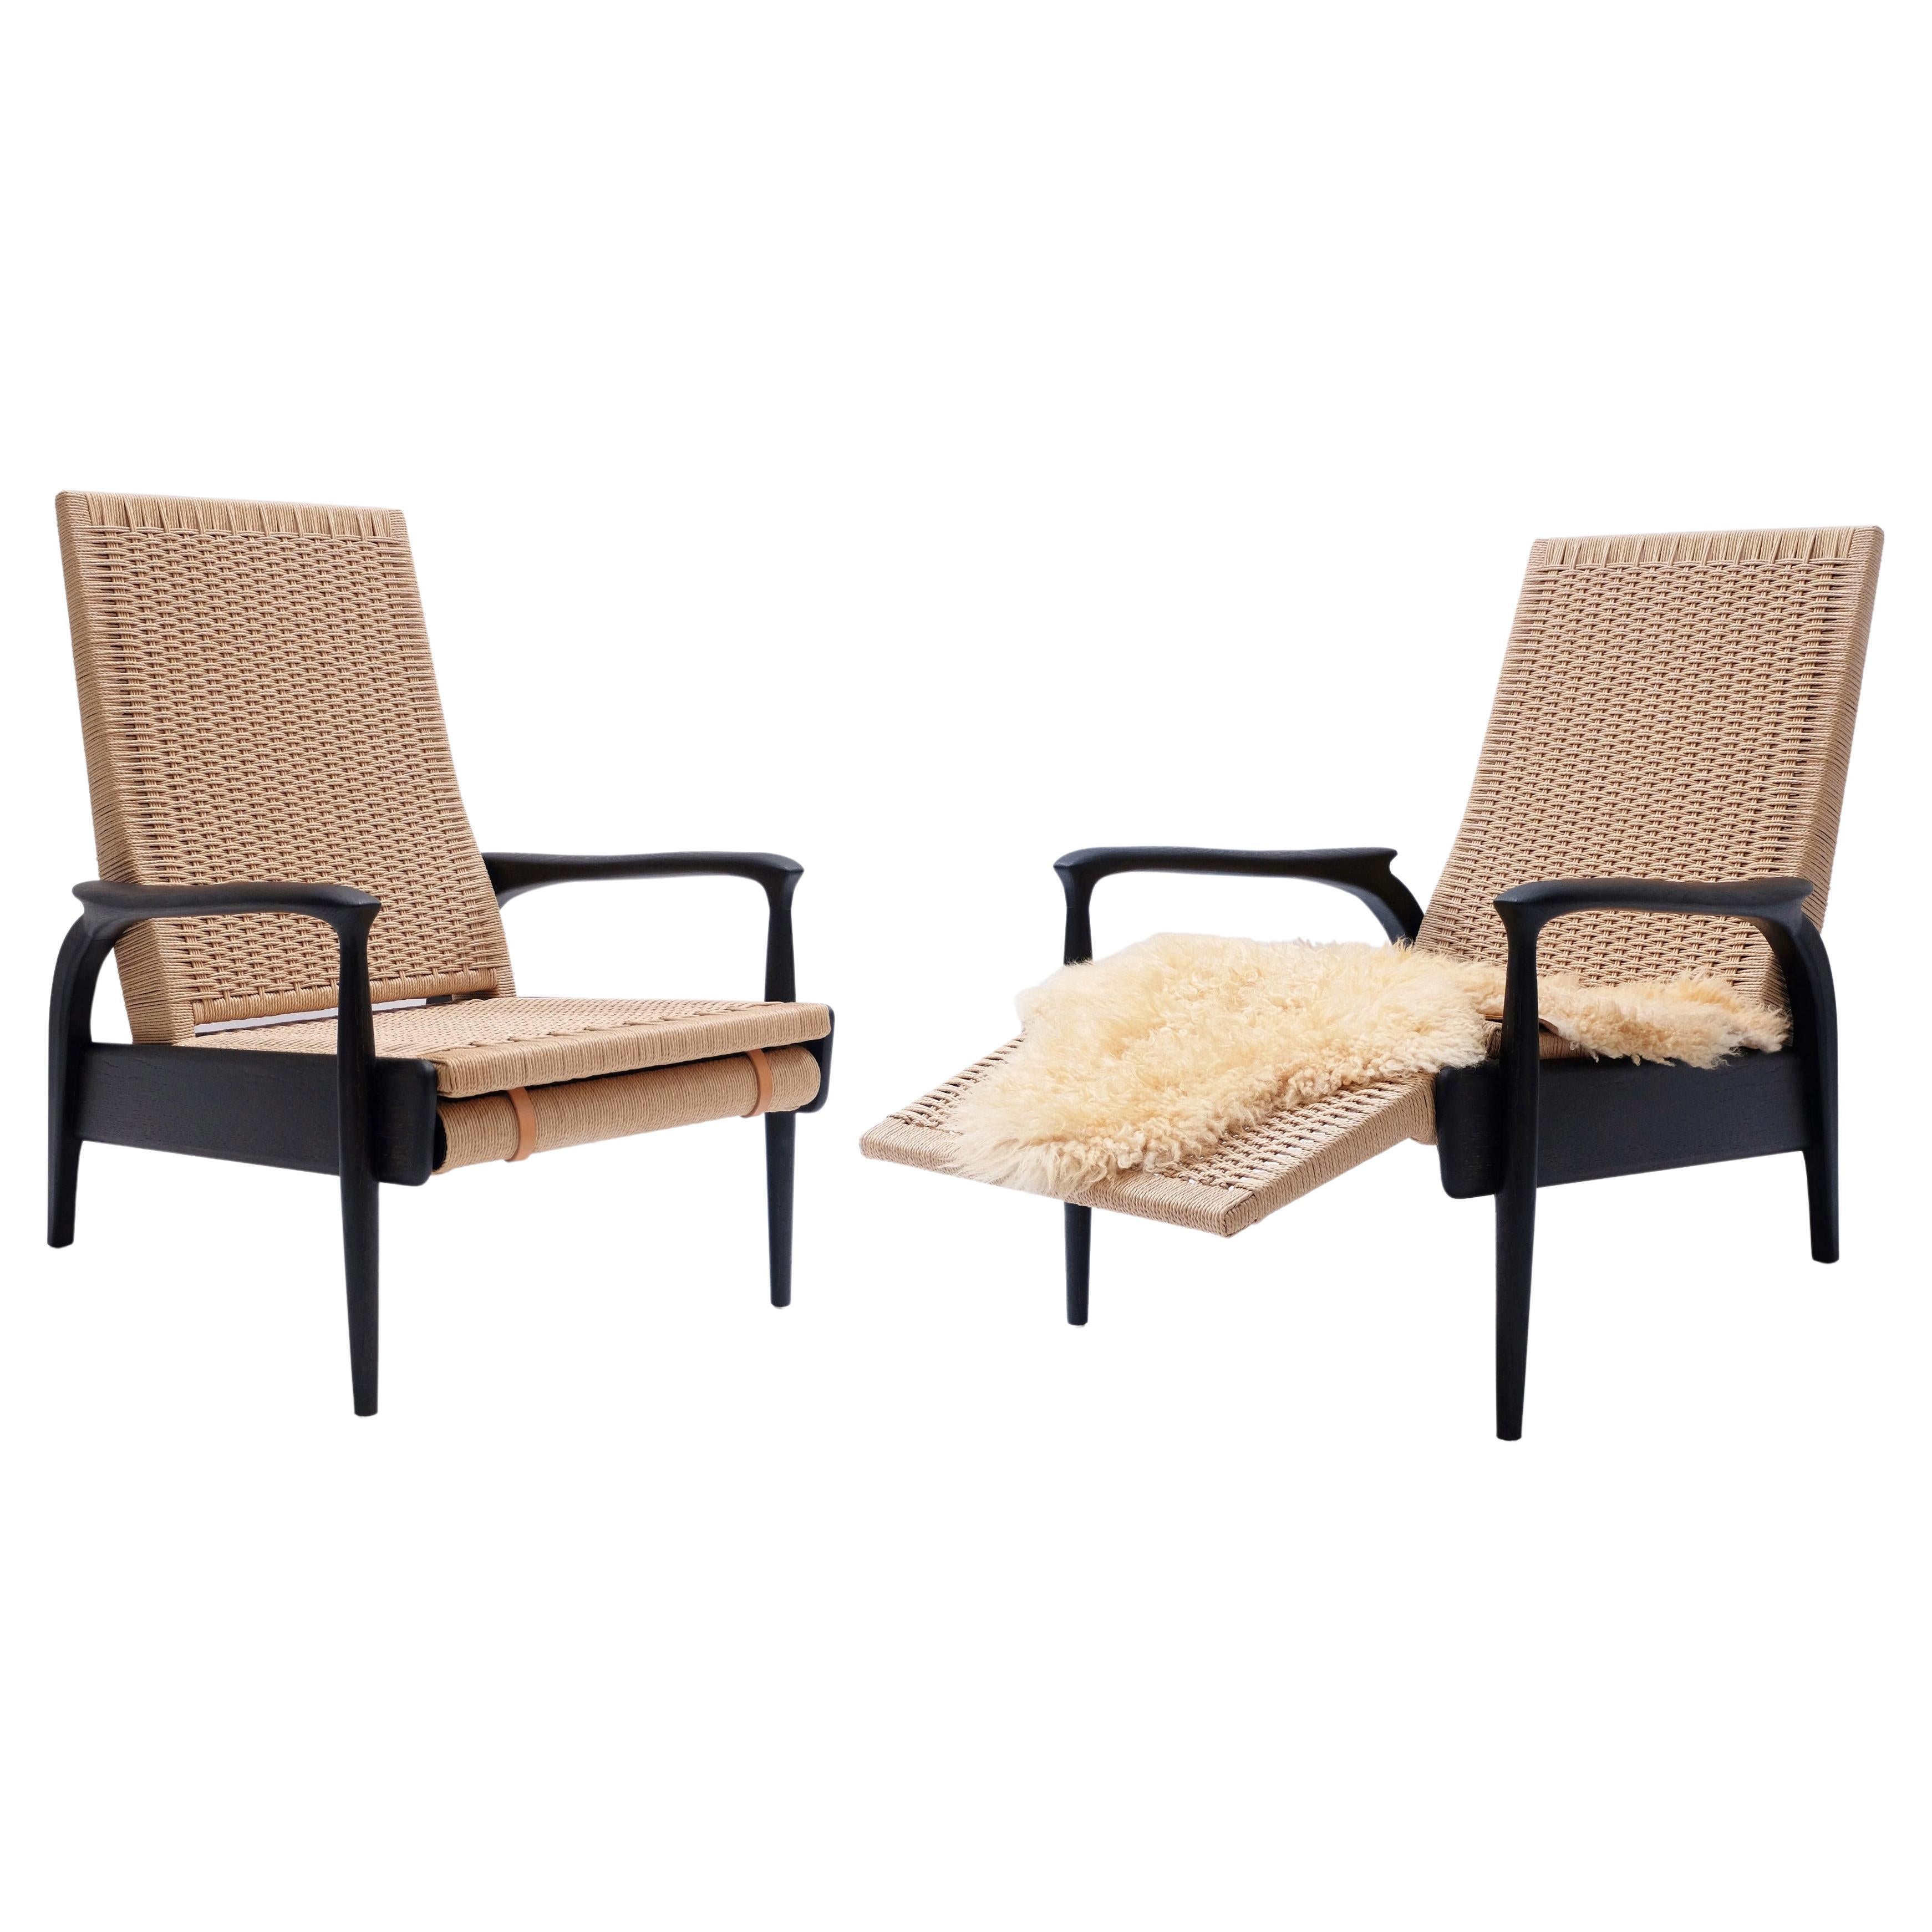 Paire de chaises longues sur mesure en chêne noirci et cordon danois naturel